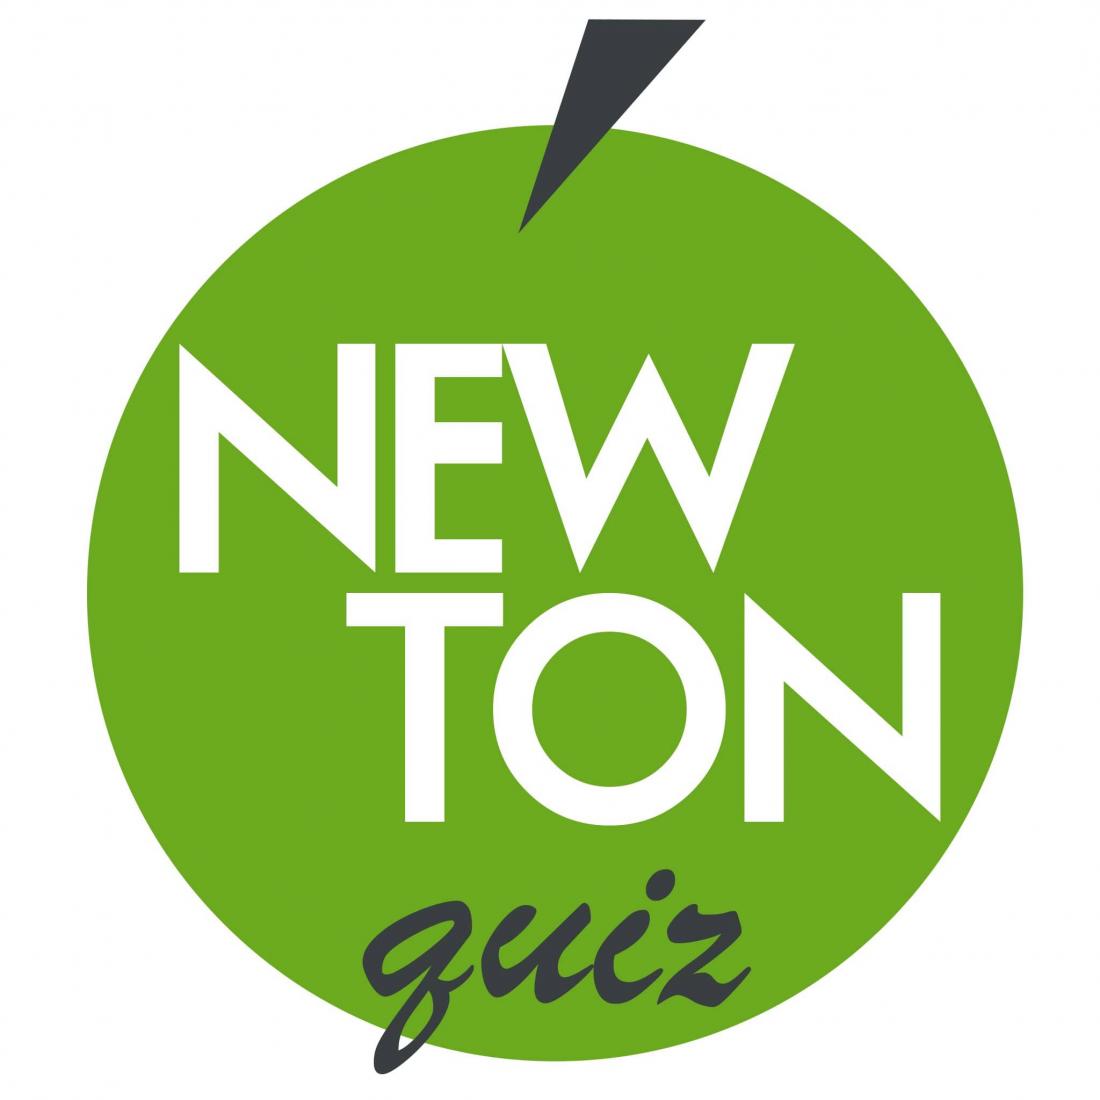 Первая игра "Ньютон квиз" бесплатно (0 р), последующая игра всего за 6 р. в караоке-баре "Уголь" в Бобруйске